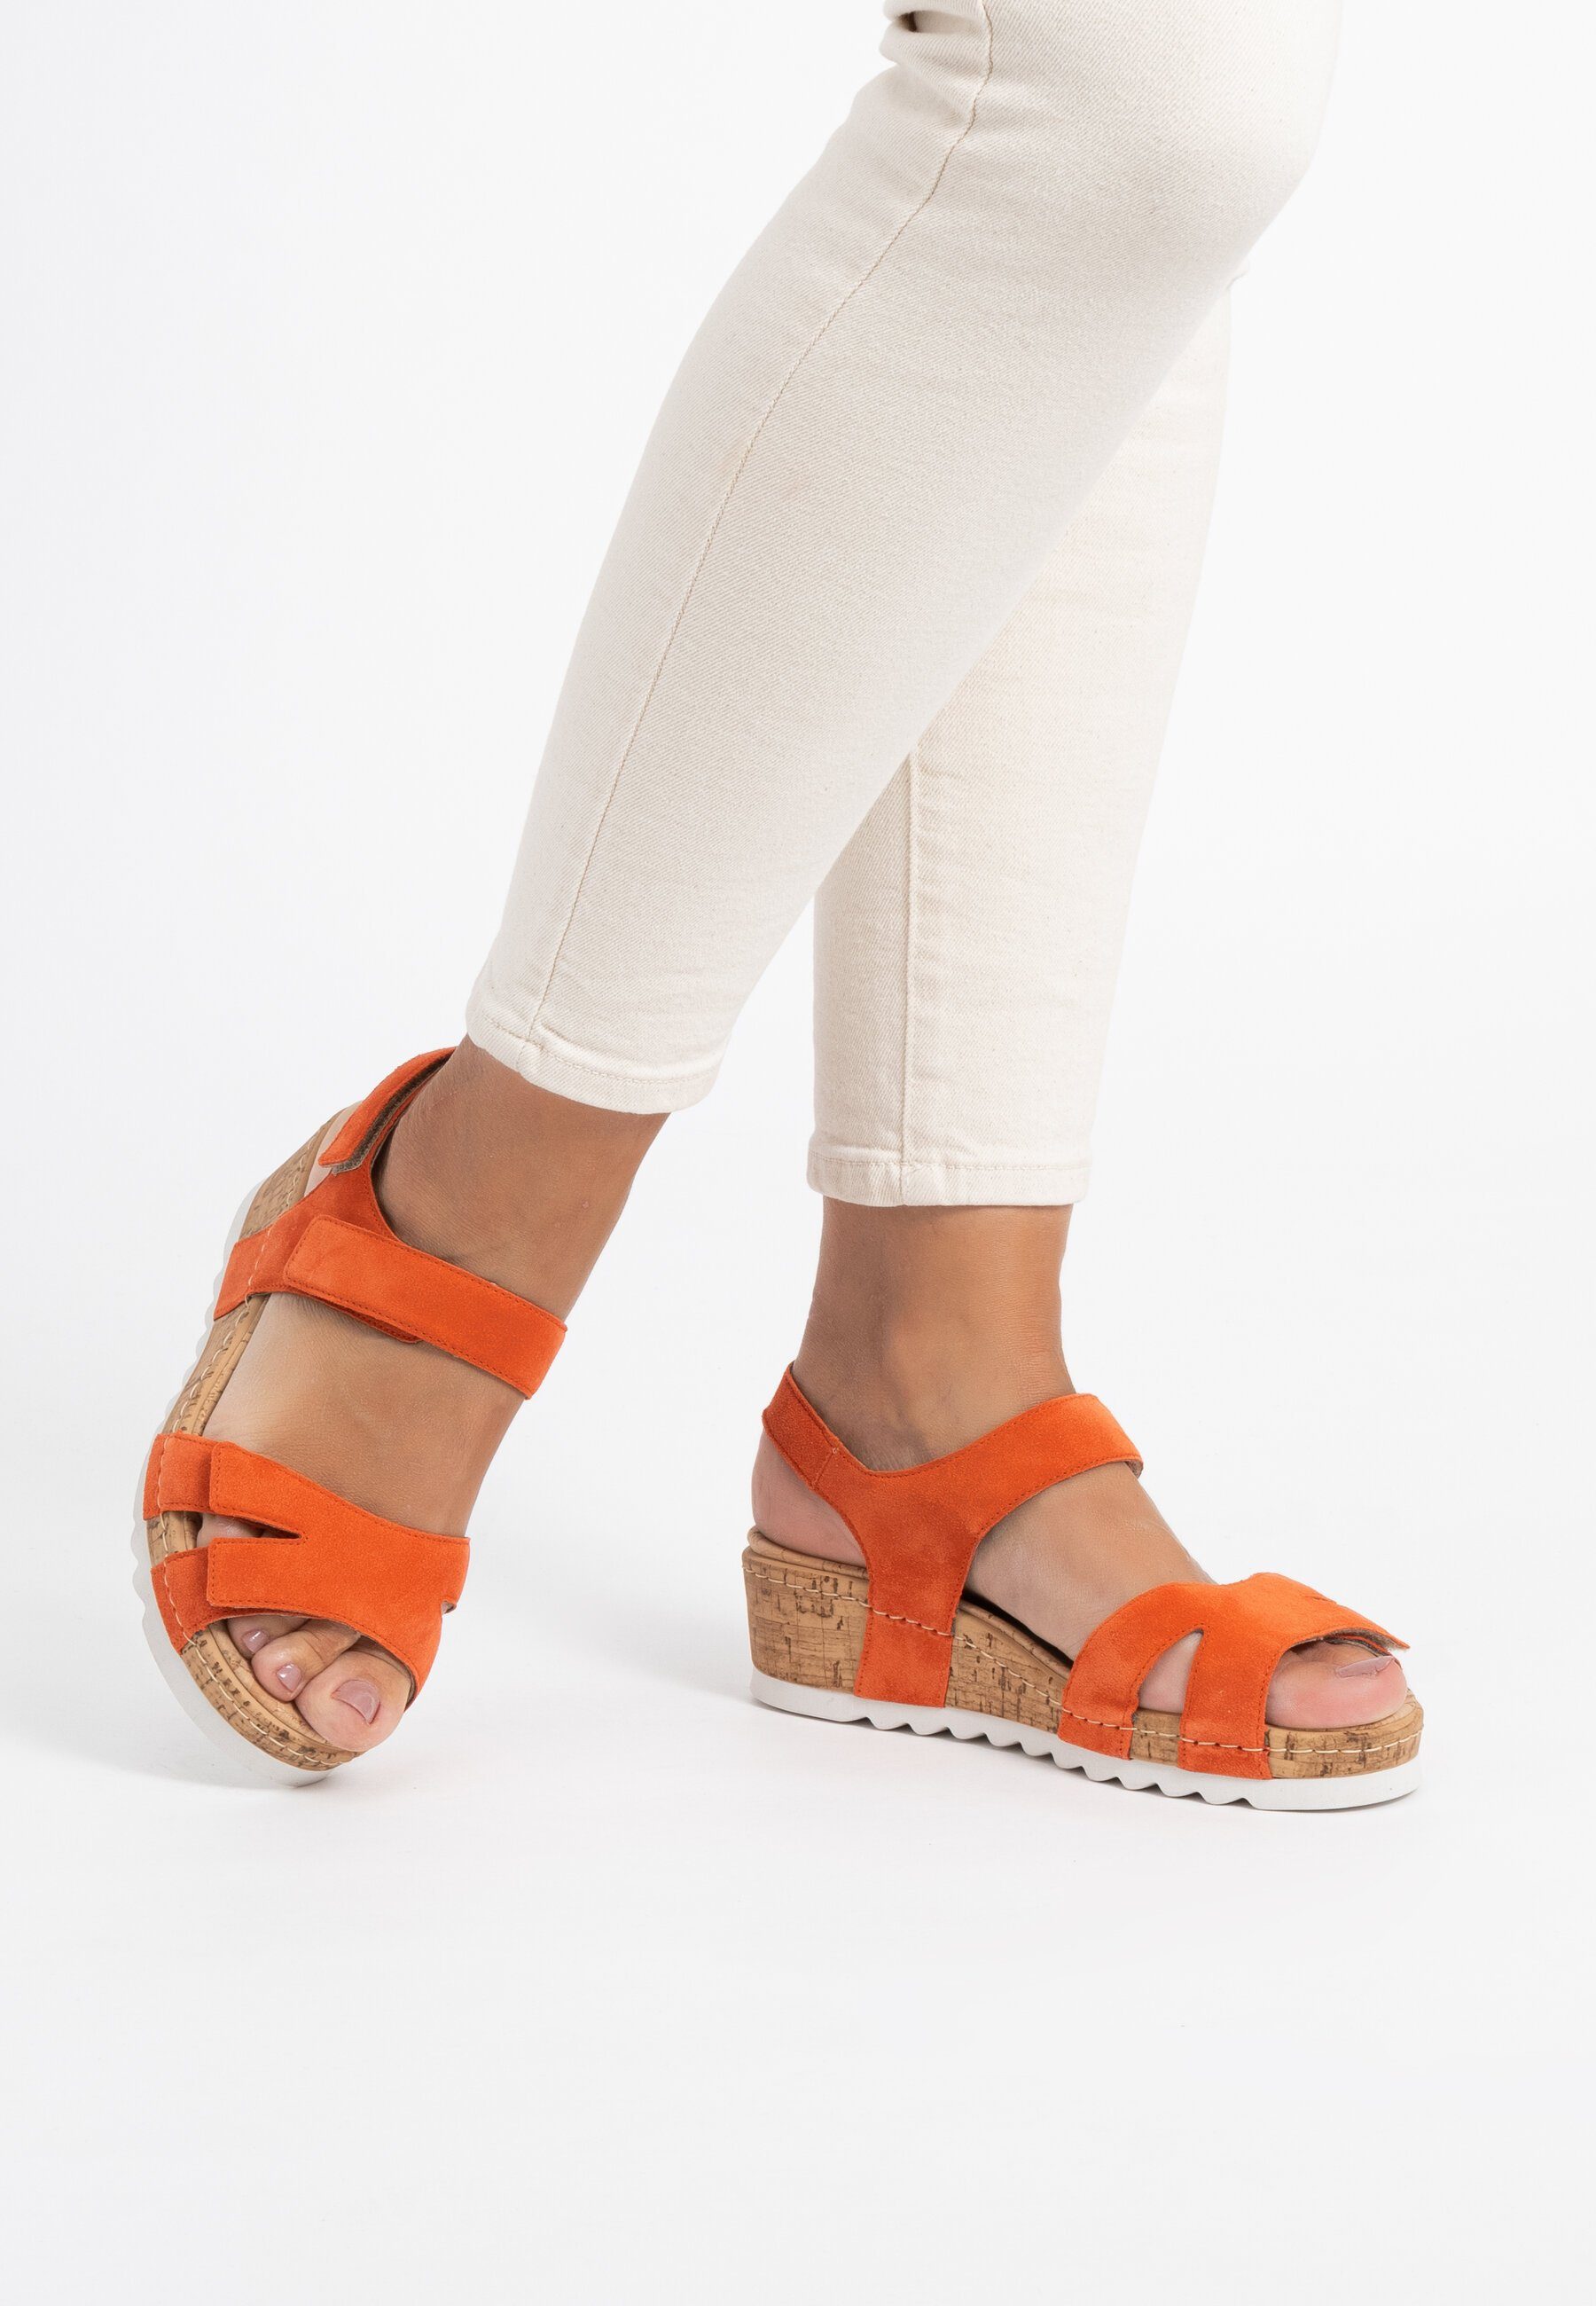 Damenschuhe Veloursleder orange Sandalette vitaform Sandalette